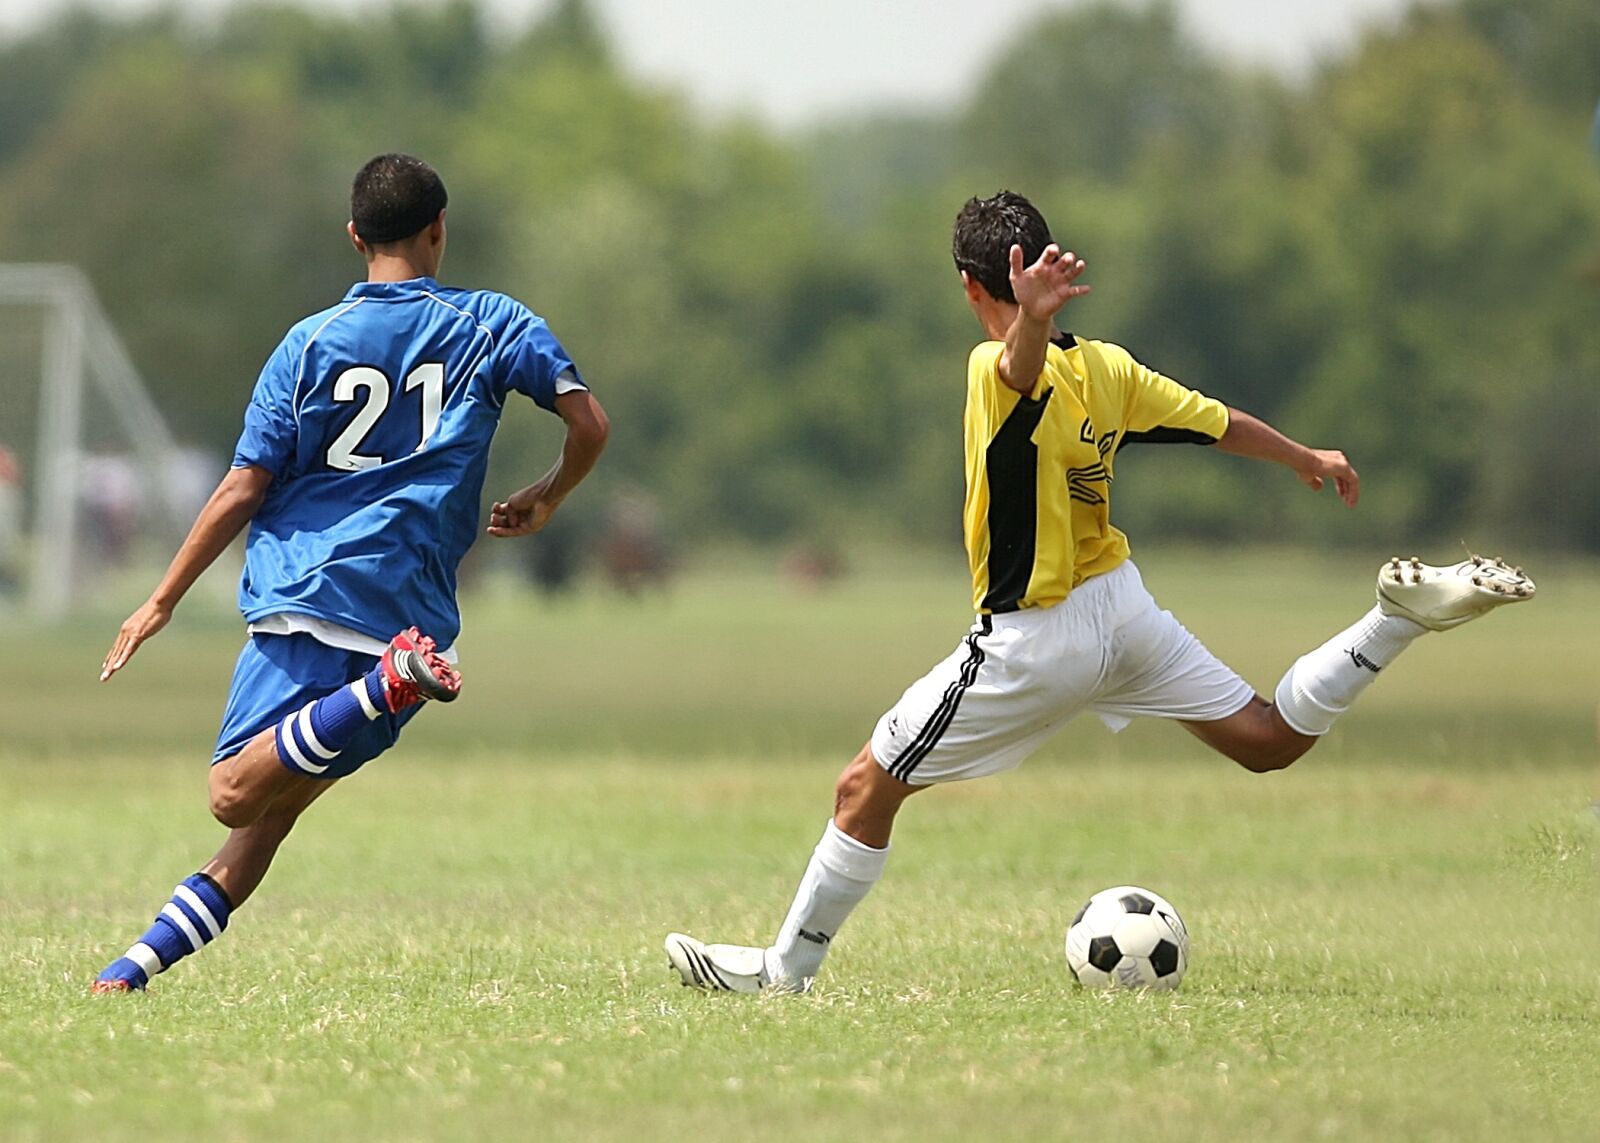 Canon EOS-1D Mark II N sample photo. Soccer, football, soccer players photography